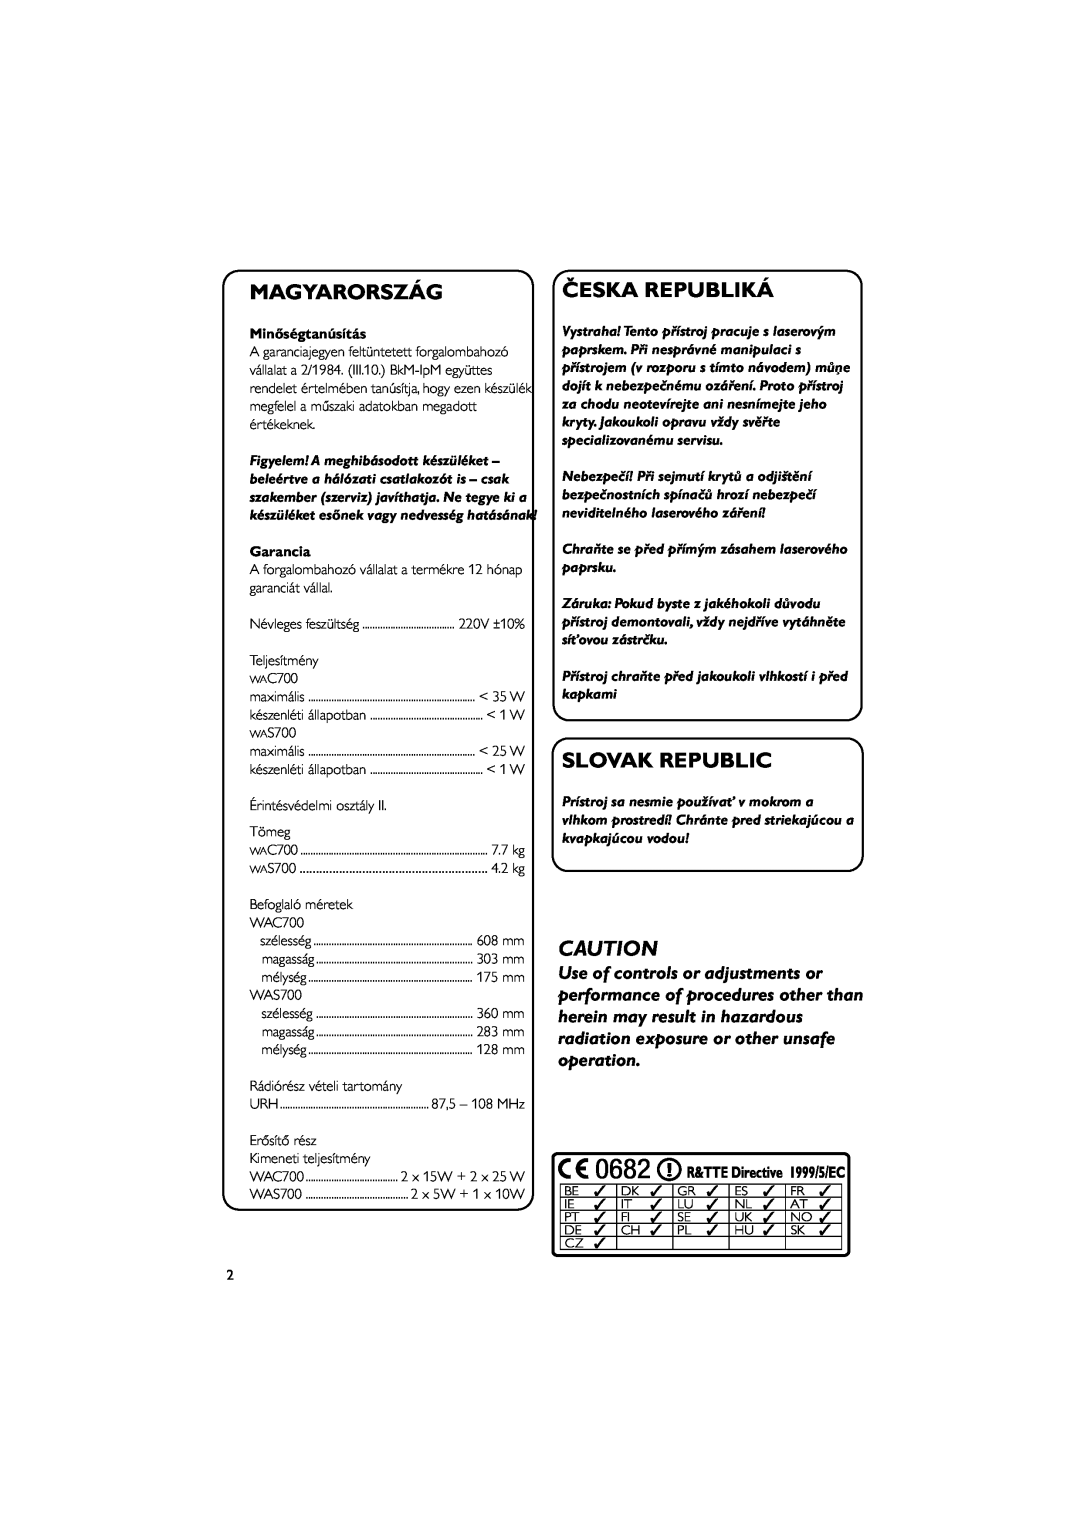 Philips WACS700 manual Magyarország, Česka Republiká, Slovak Republic, Minőségtanúsítás, Garancia 